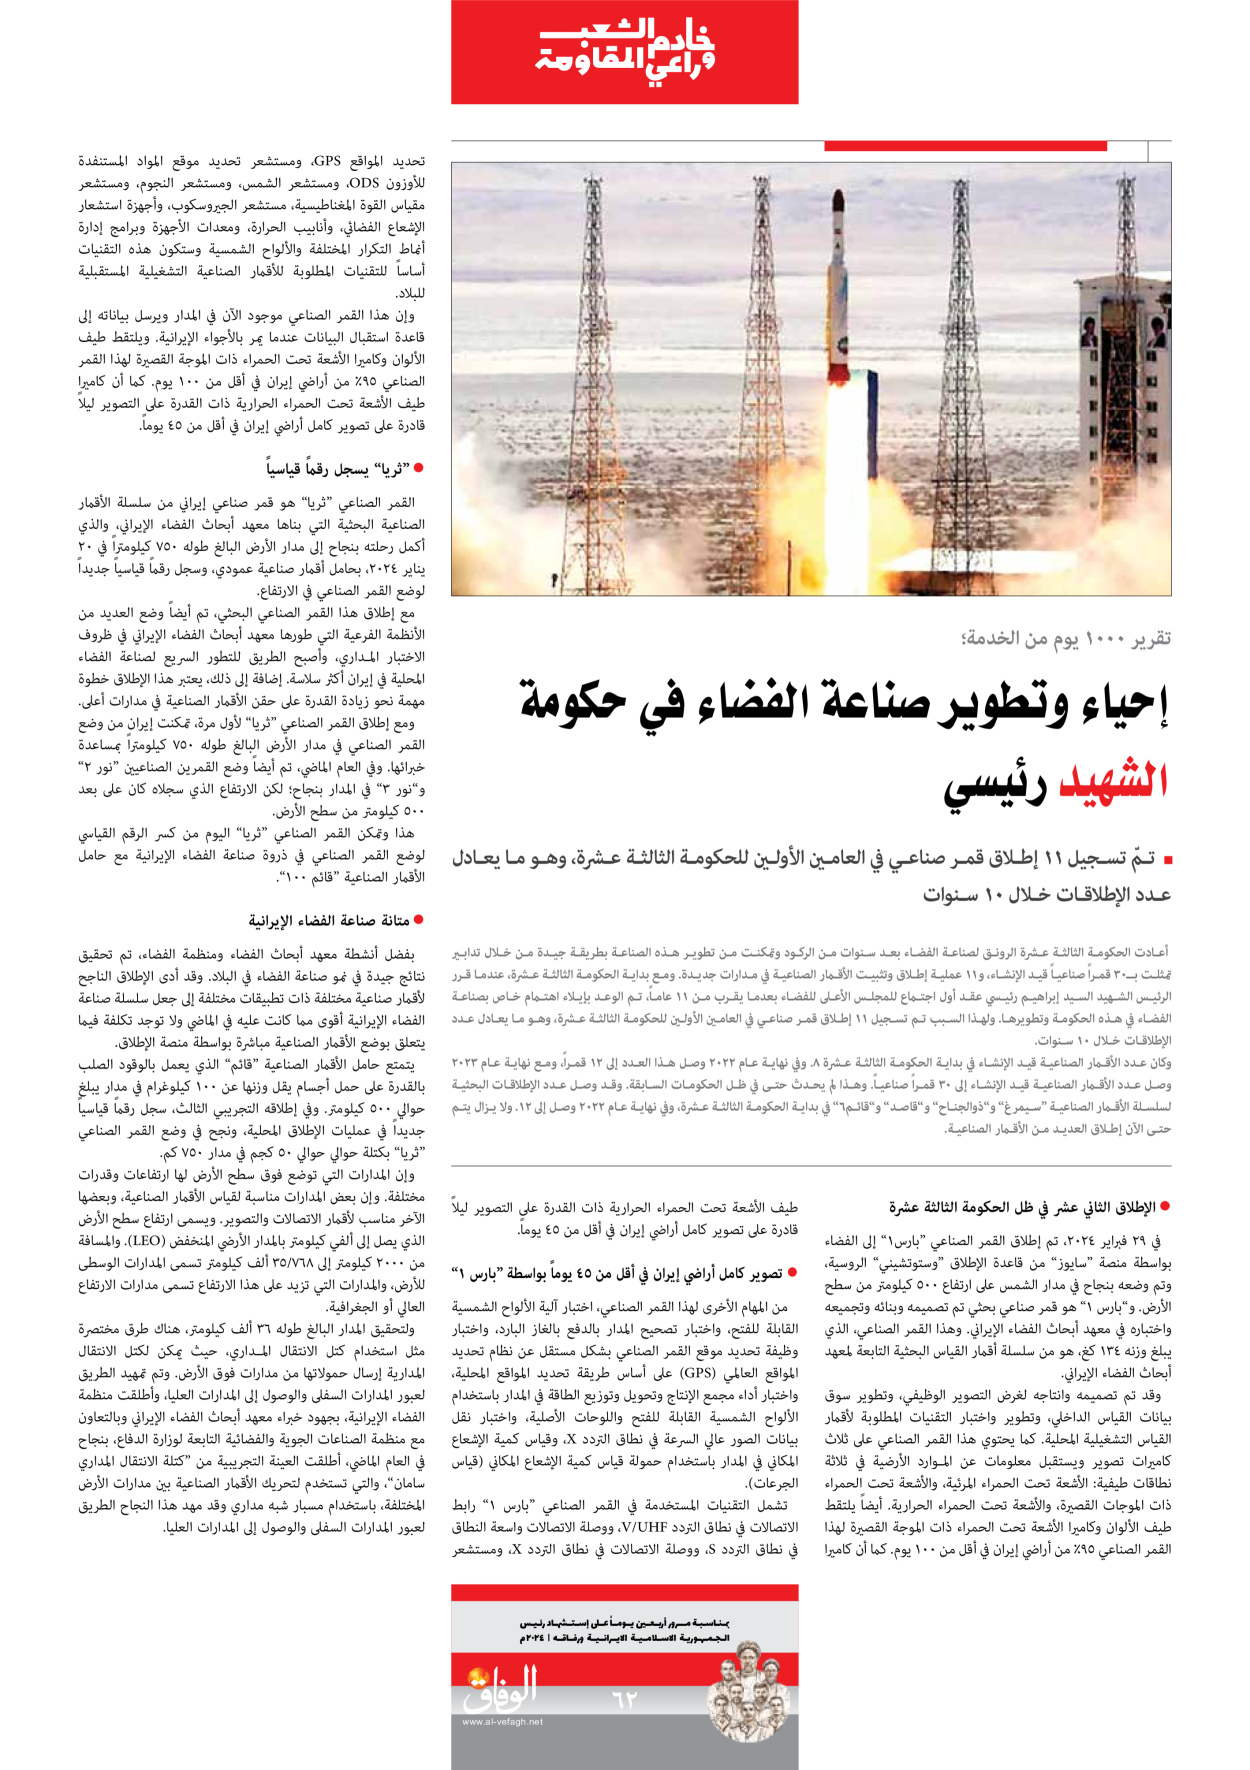 صحیفة ایران الدولیة الوفاق - ملحق ویژه نامه چهلم شهید رییسی - ٢٩ يونيو ٢٠٢٤ - الصفحة ٦۲